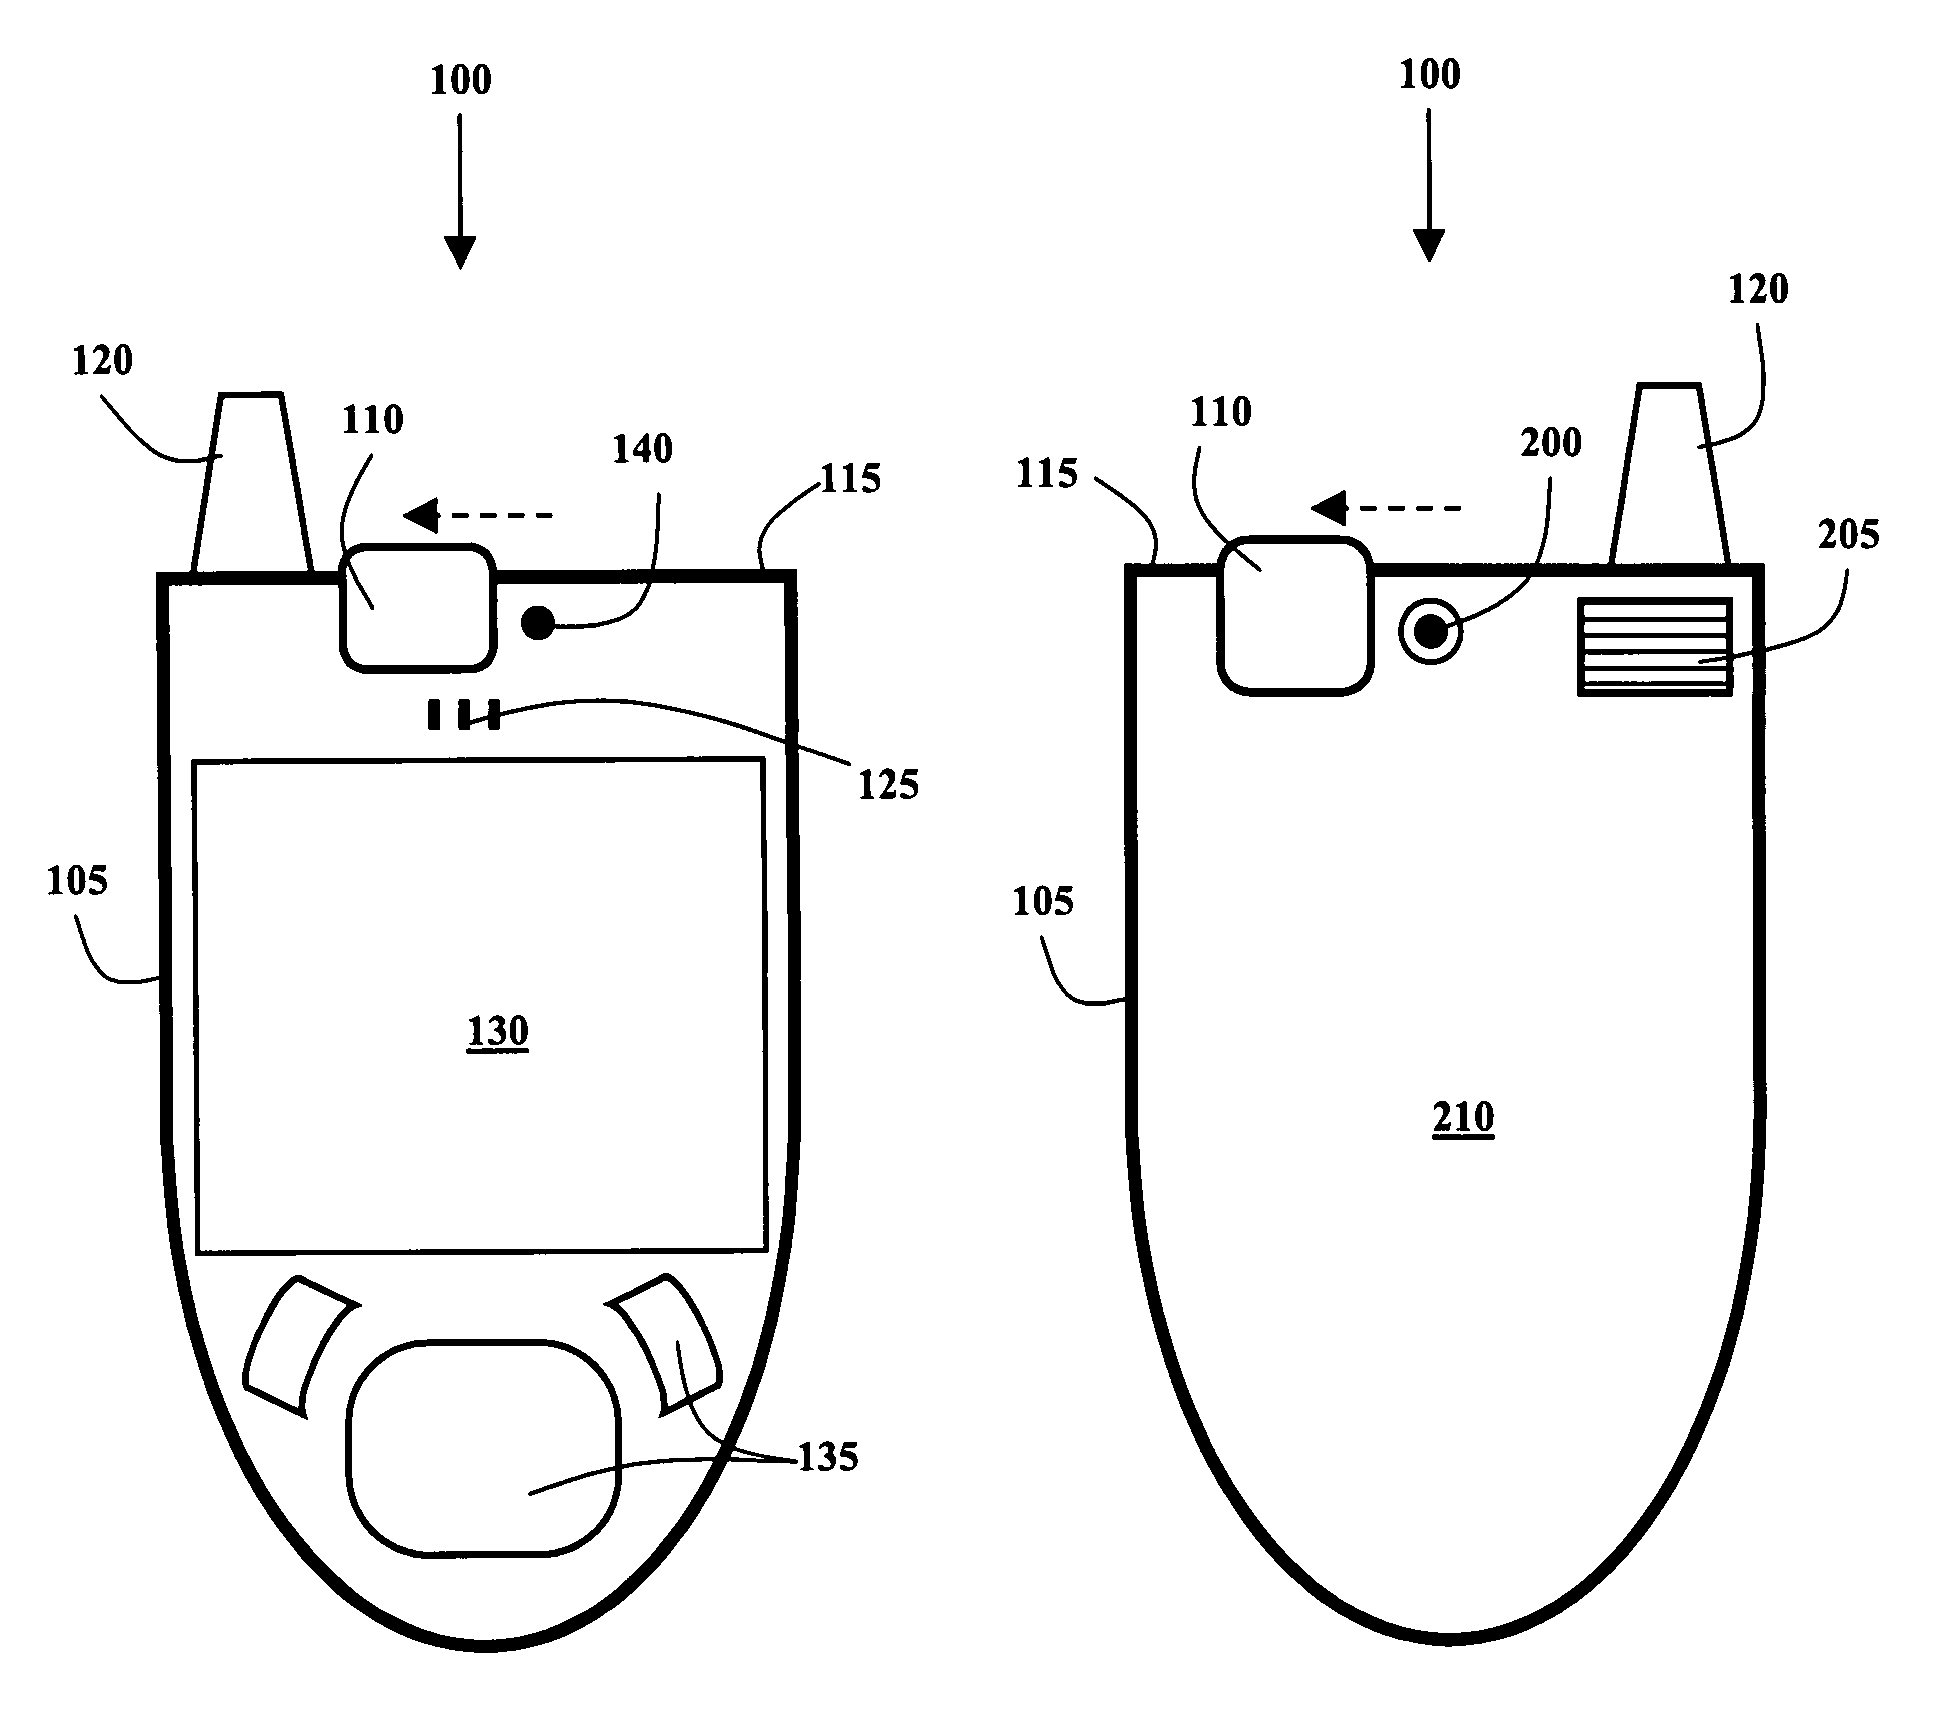 U-cover camera phone